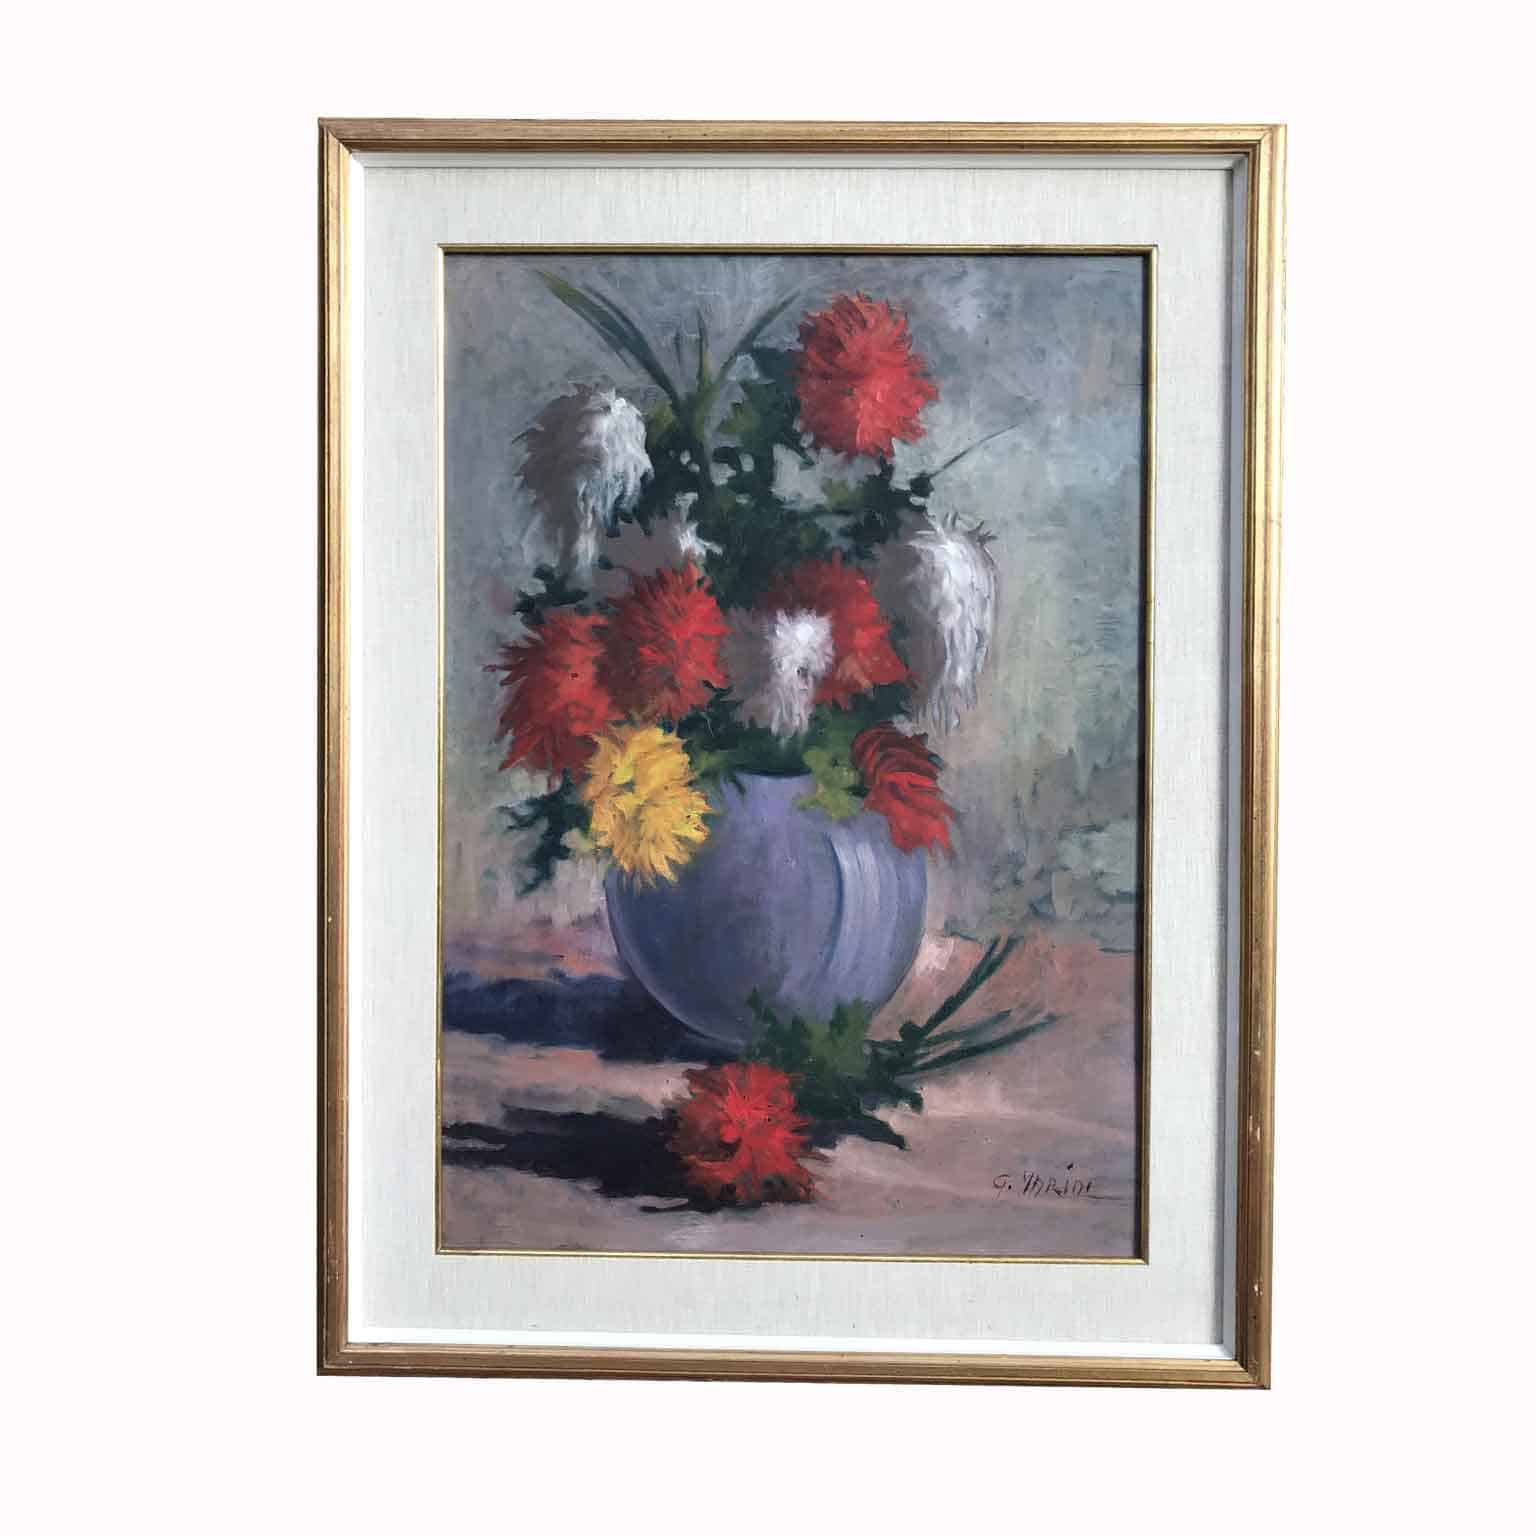 Dipinto con vaso di fiori firmato in basso a destra G. Marini